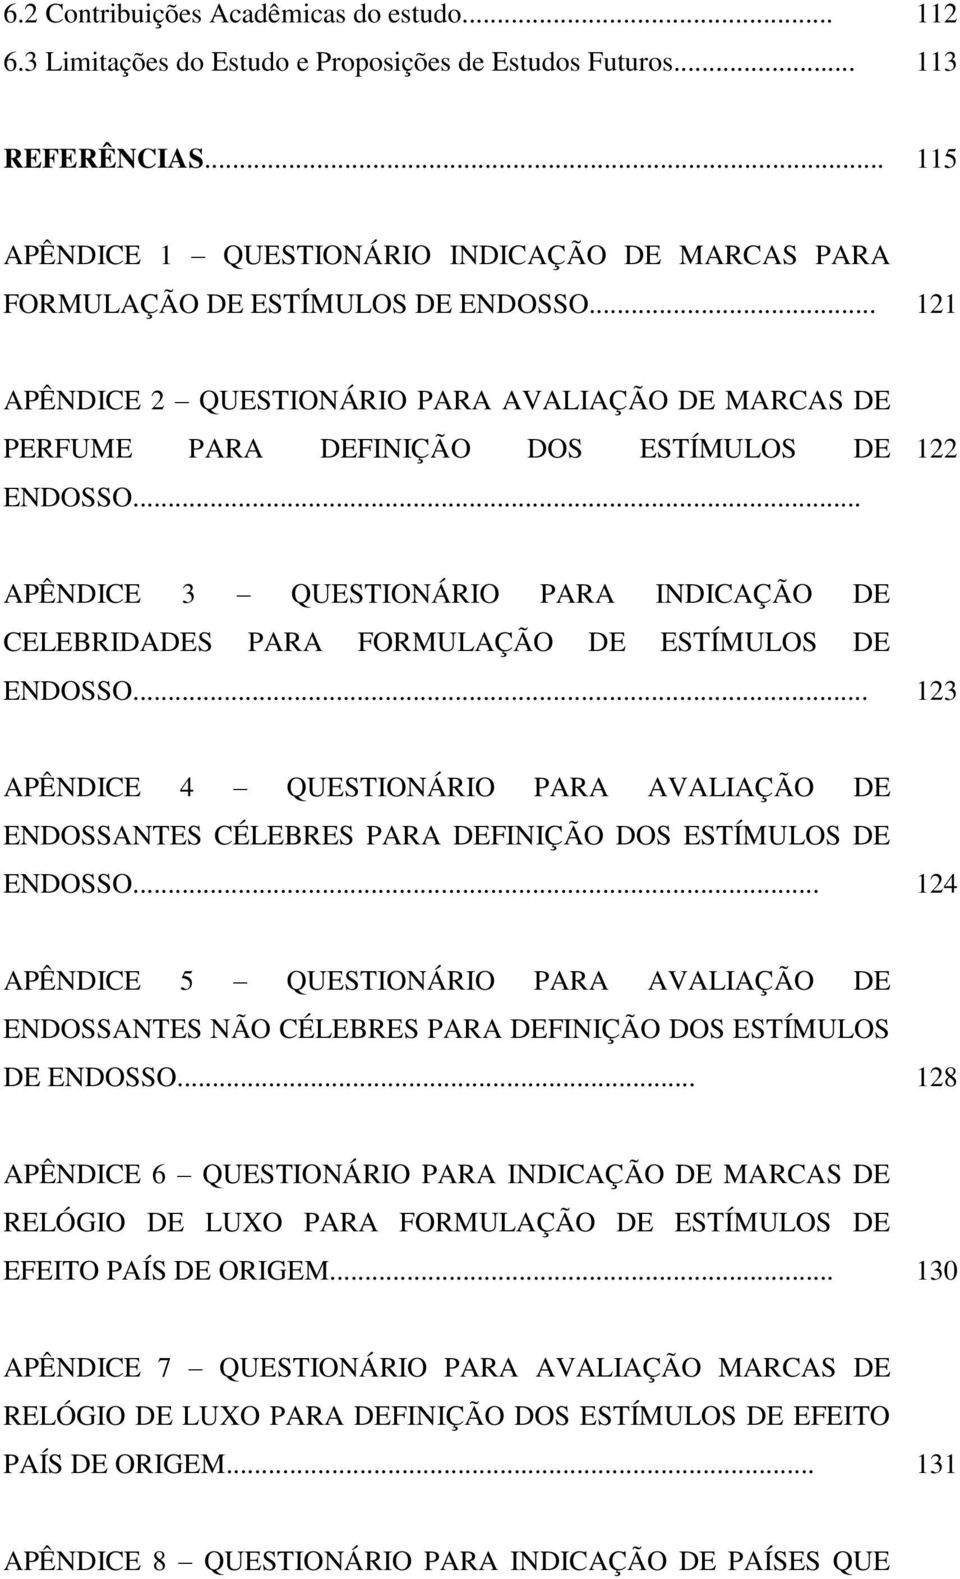 .. 122 APÊNDICE 3 QUESTIONÁRIO PARA INDICAÇÃO DE CELEBRIDADES PARA FORMULAÇÃO DE ESTÍMULOS DE ENDOSSO.